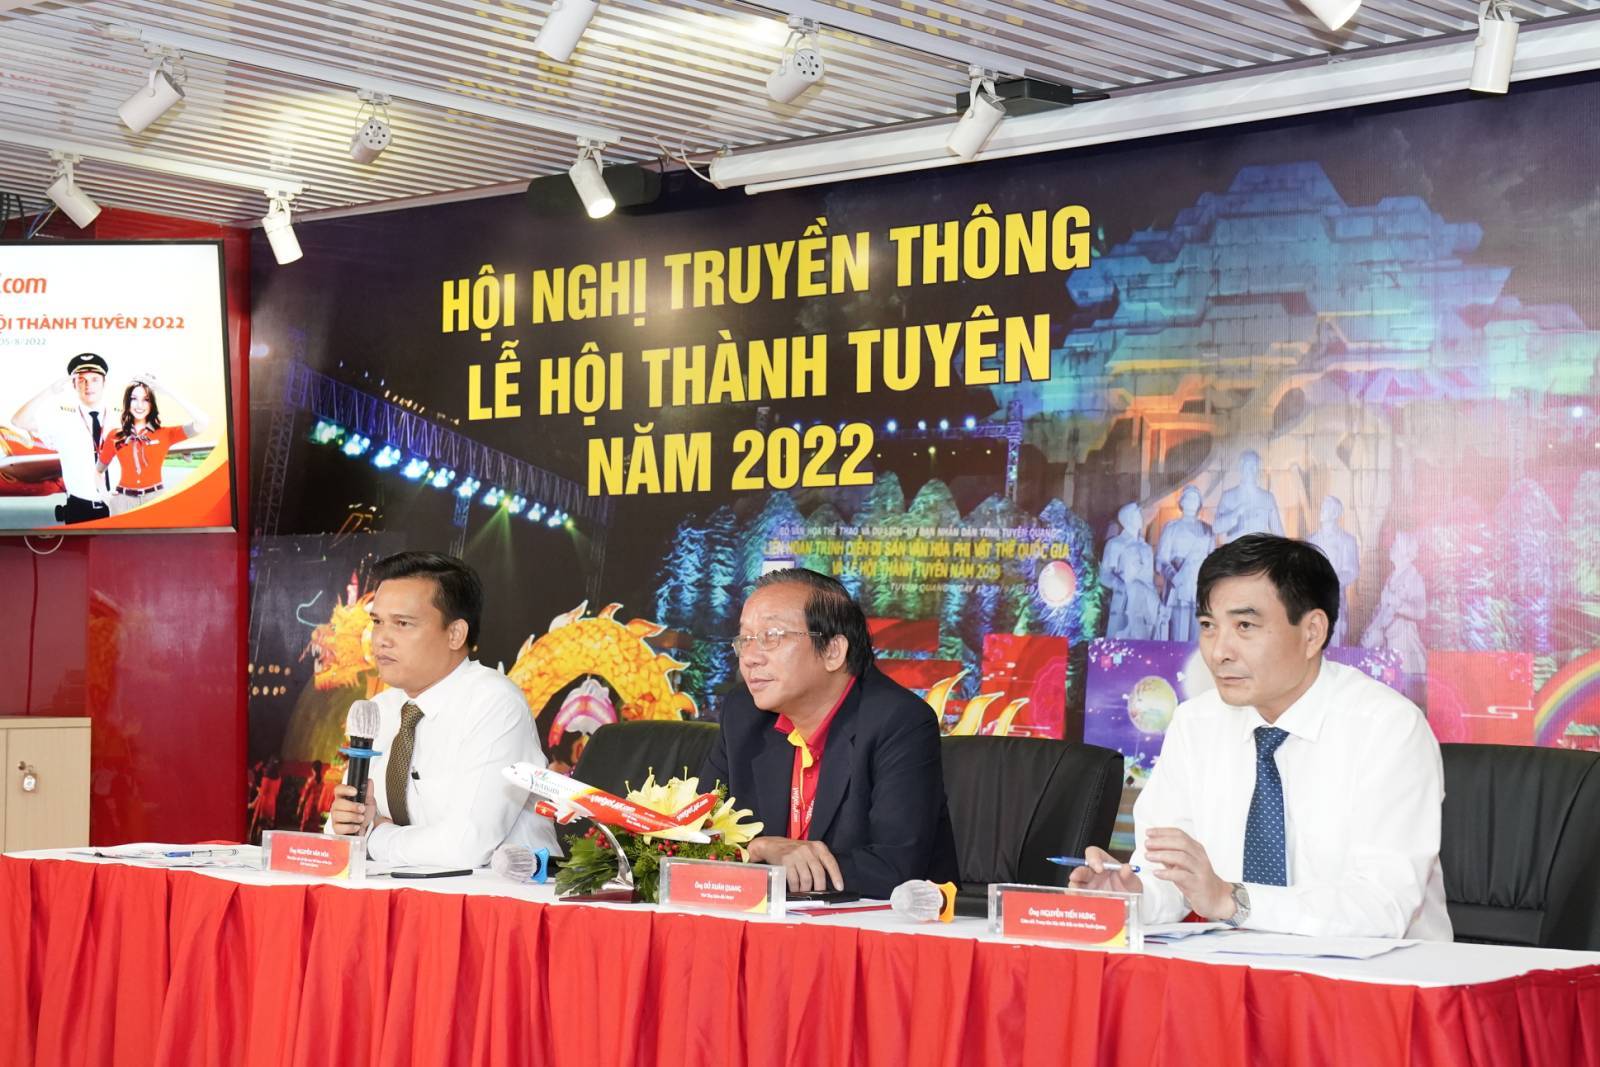 Hội nghị giới thiệu chuỗi hoạt động Lễ hội Thành Tuyên 2022 với nhiều chương trình lễ hội độc đáo, hấp dẫn